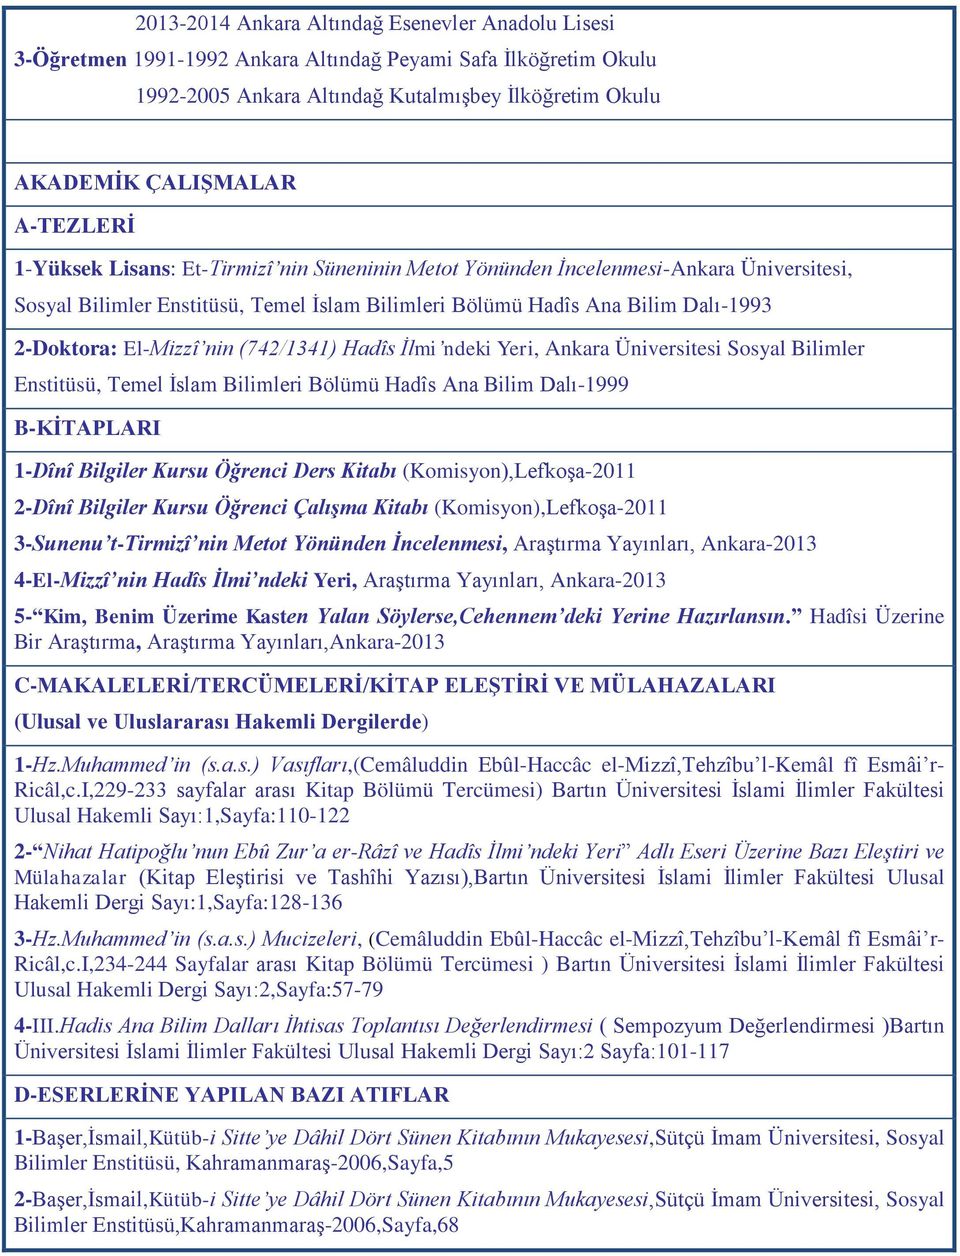 El-Mizzî nin (742/1341) Hadîs İlmi ndeki Yeri, Ankara Üniversitesi Sosyal Bilimler Enstitüsü, Temel İslam Bilimleri Bölümü Hadîs Ana Bilim Dalı-1999 B-KİTAPLARI 1-Dînî Bilgiler Kursu Öğrenci Ders